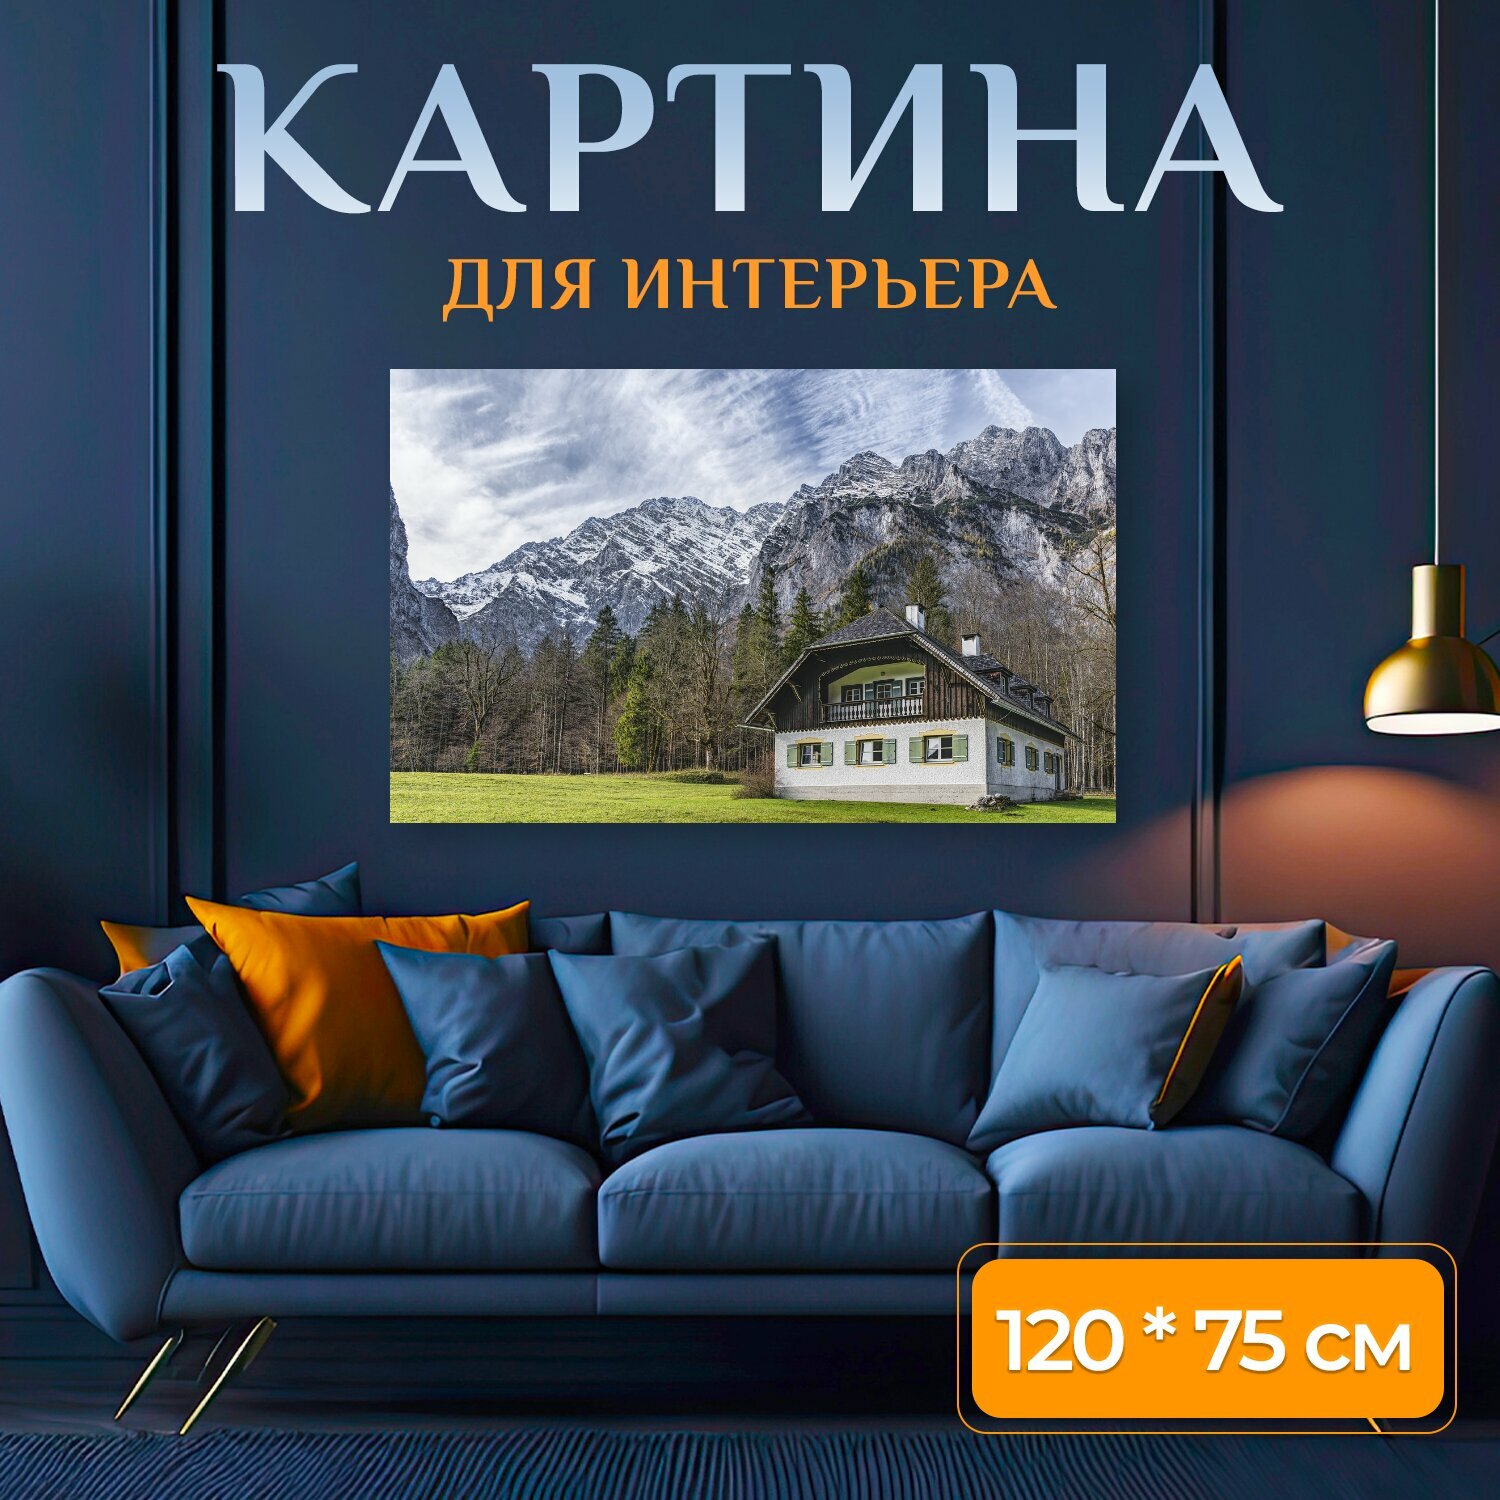 Картина на холсте "Дом, хижина, санкт бартоломе" на подрамнике 120х75 см. для интерьера